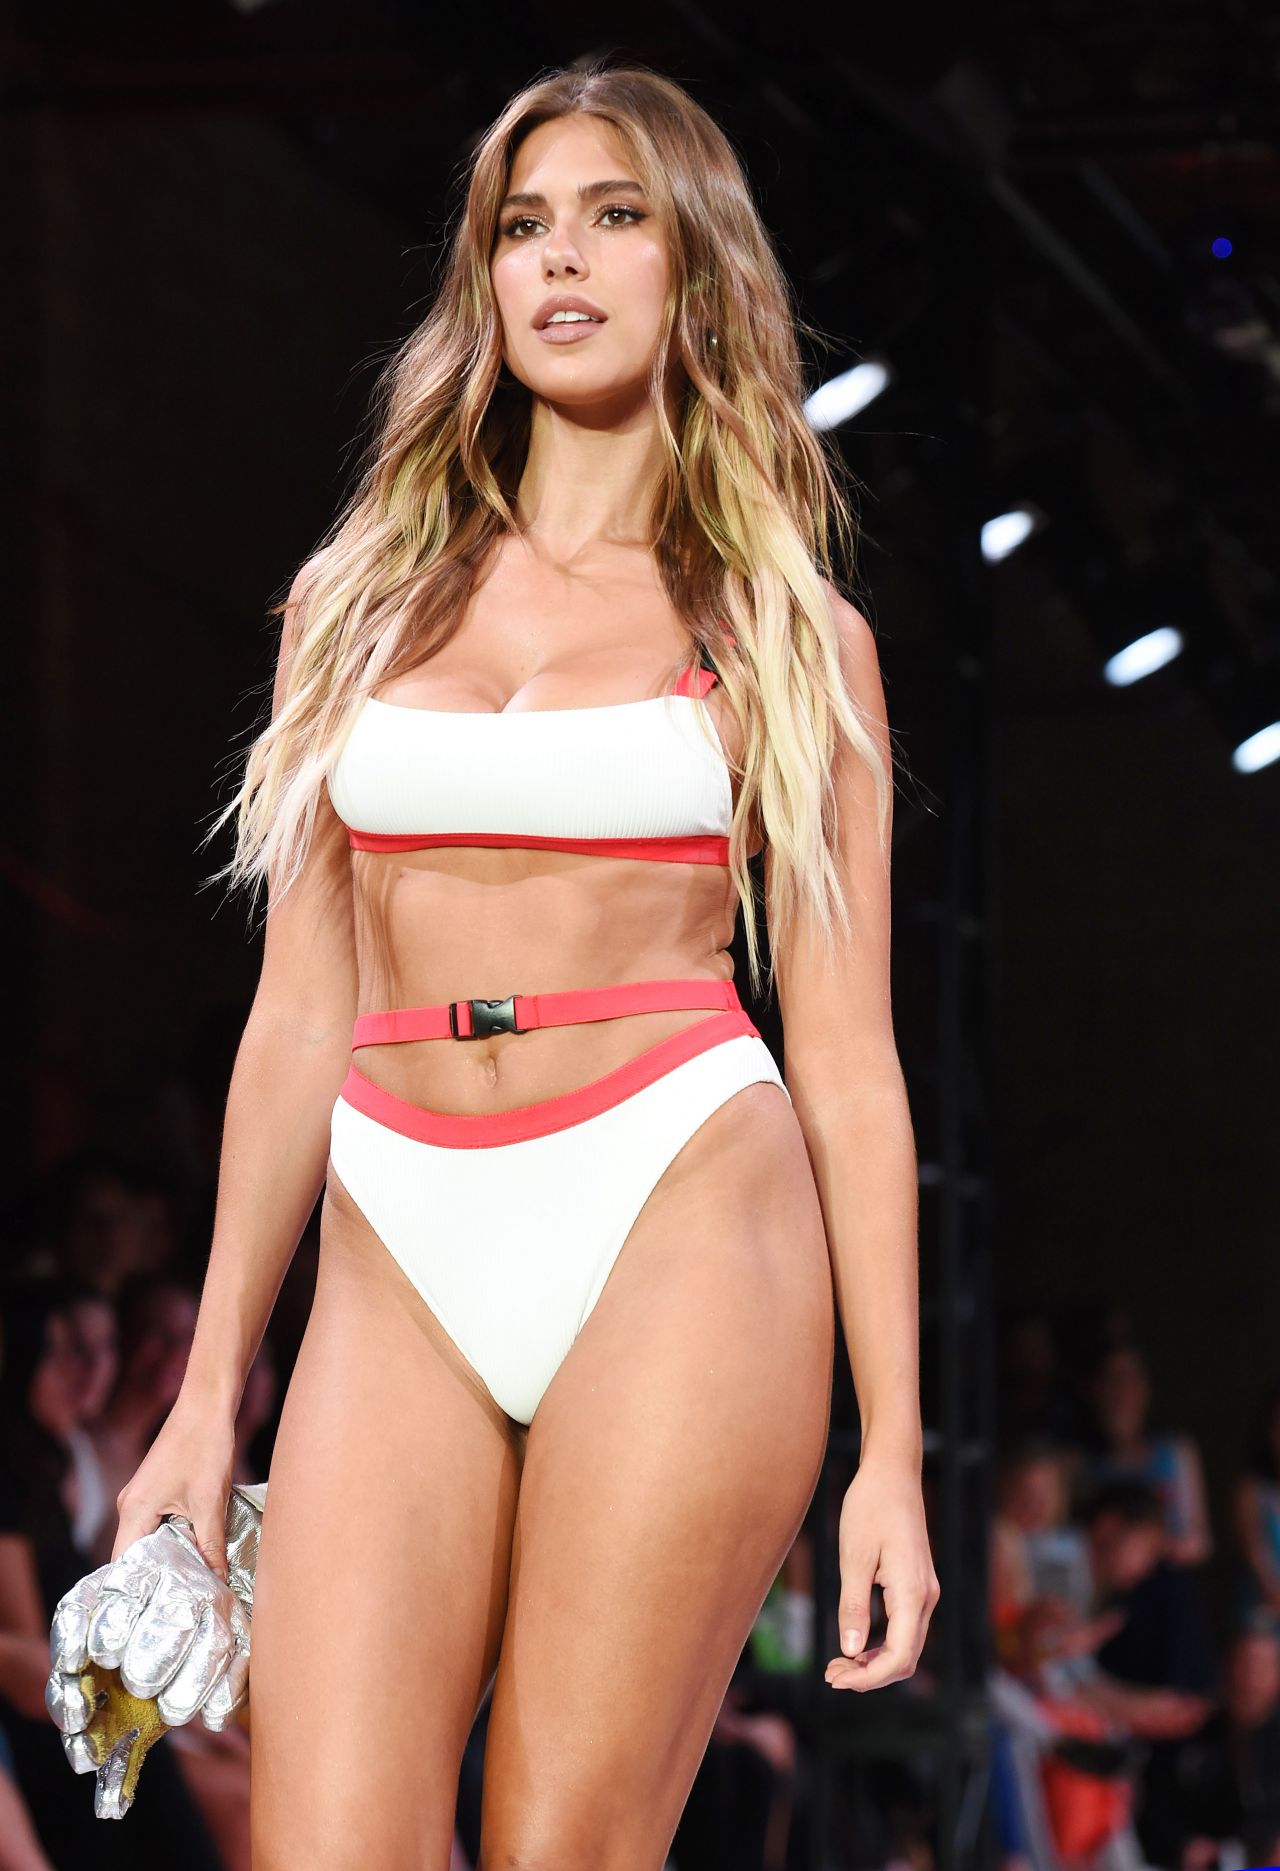 Capittana swimwear bikini fashion show 2019 models 2018